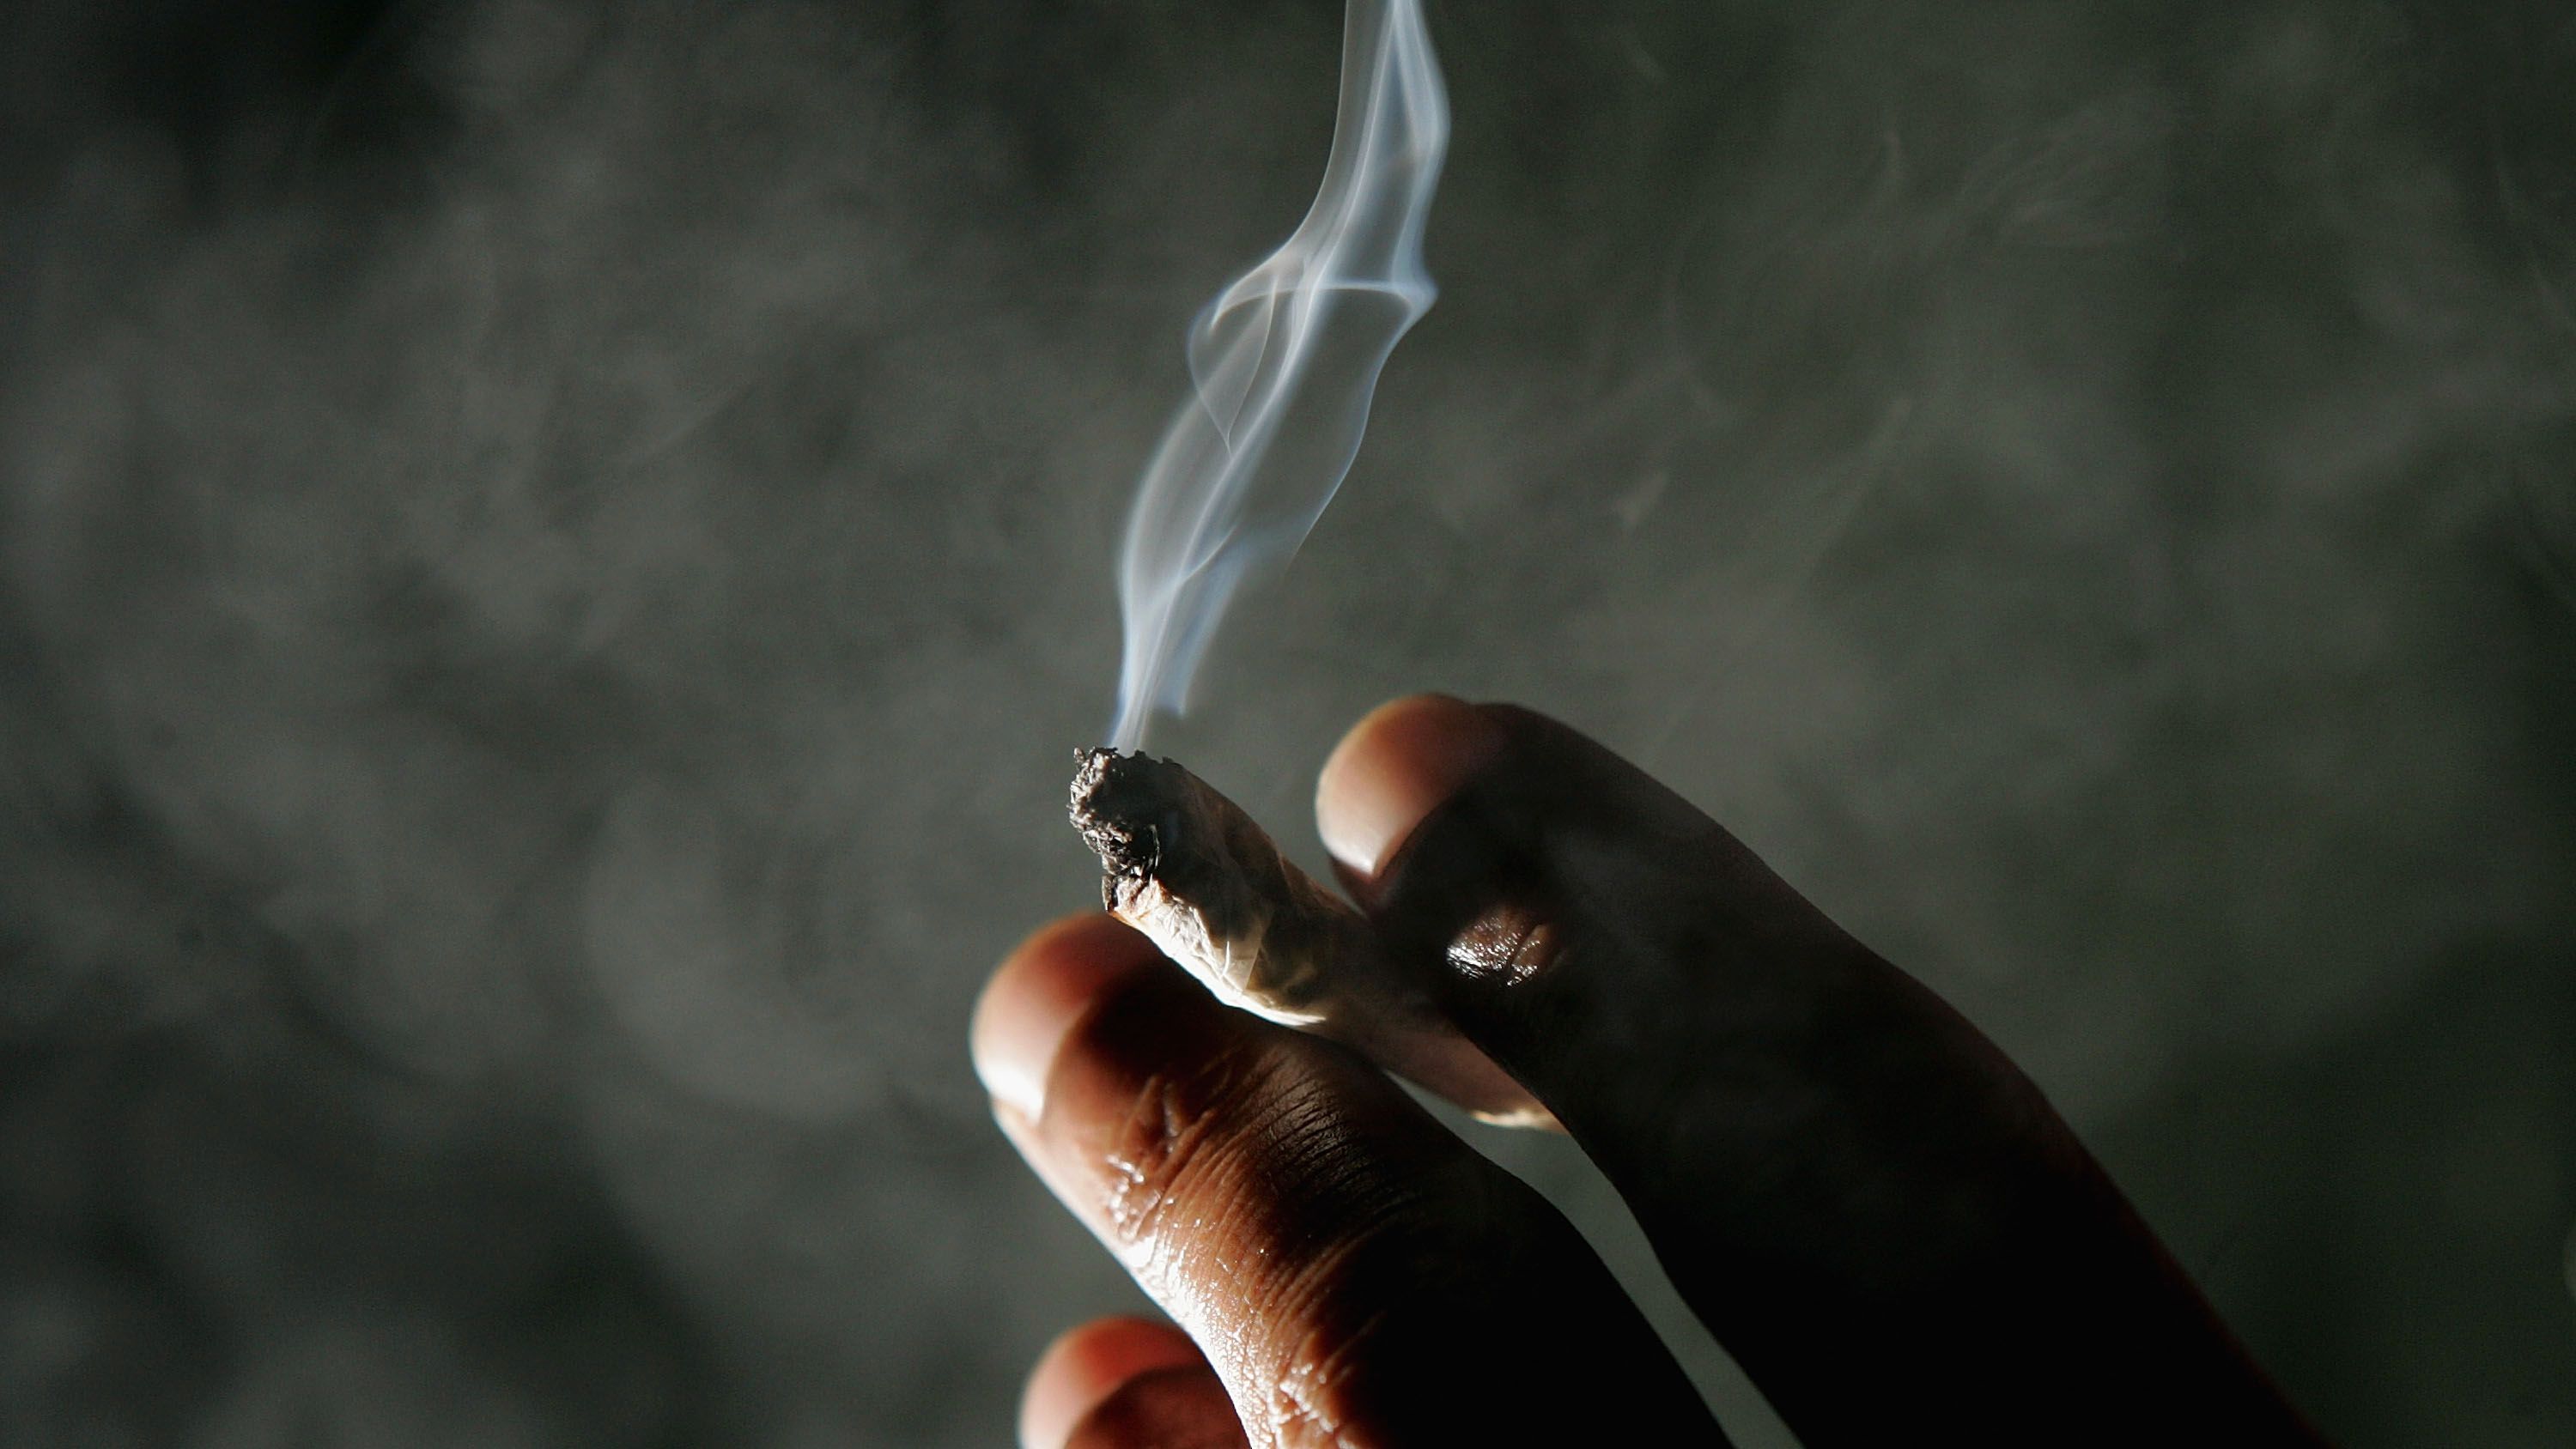 The Marijuana Craze: Is It A Drug, A Medicine Or Just A Legal Problem?